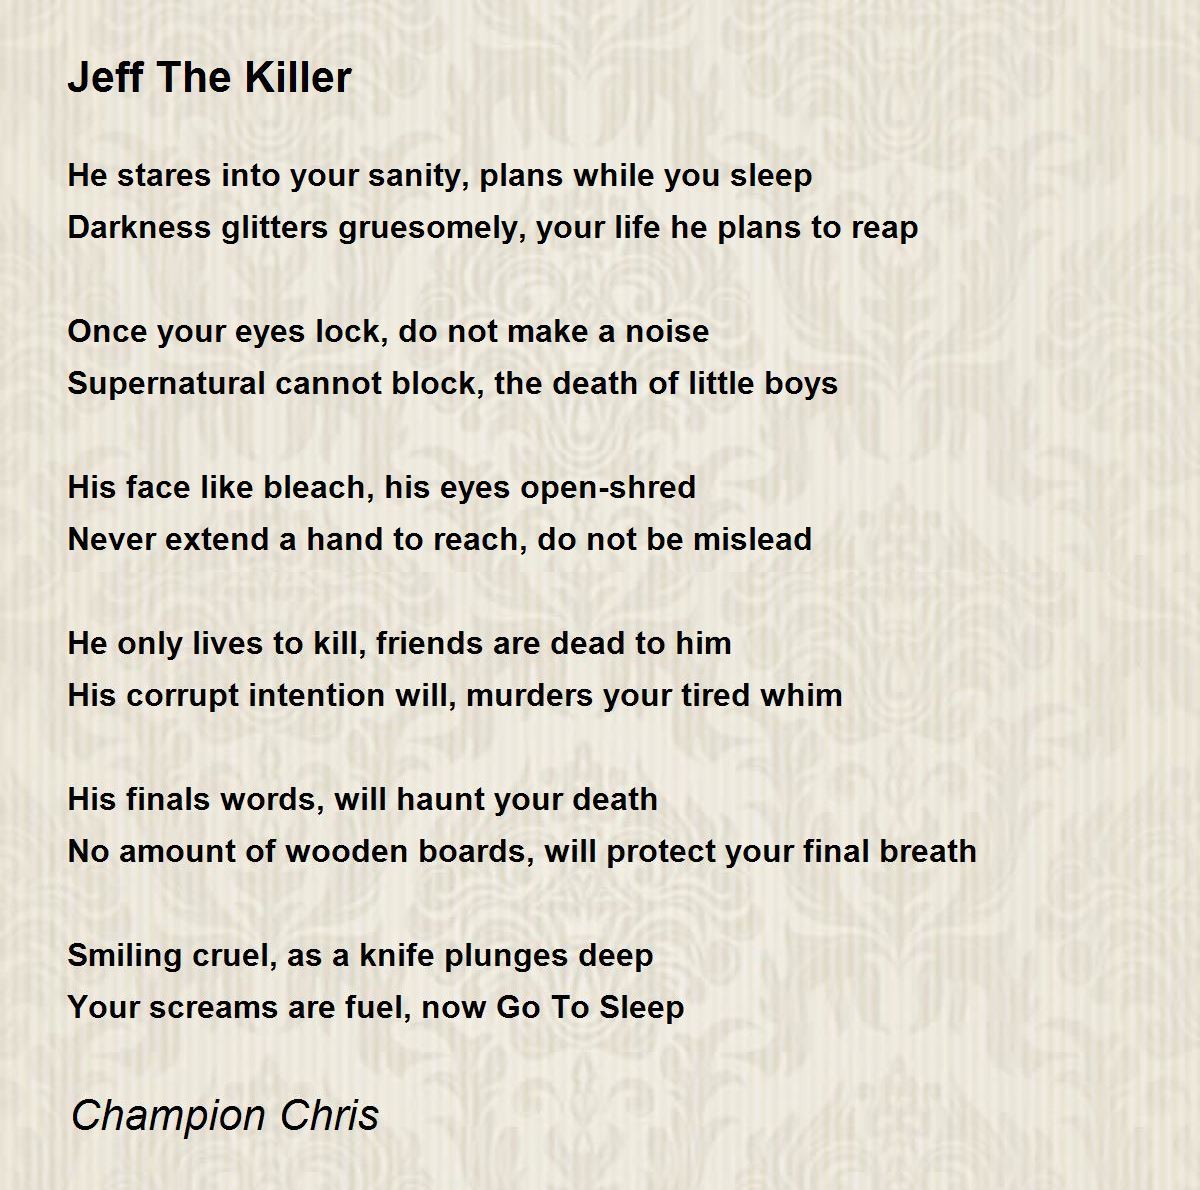 Jeff the killer – PAOM